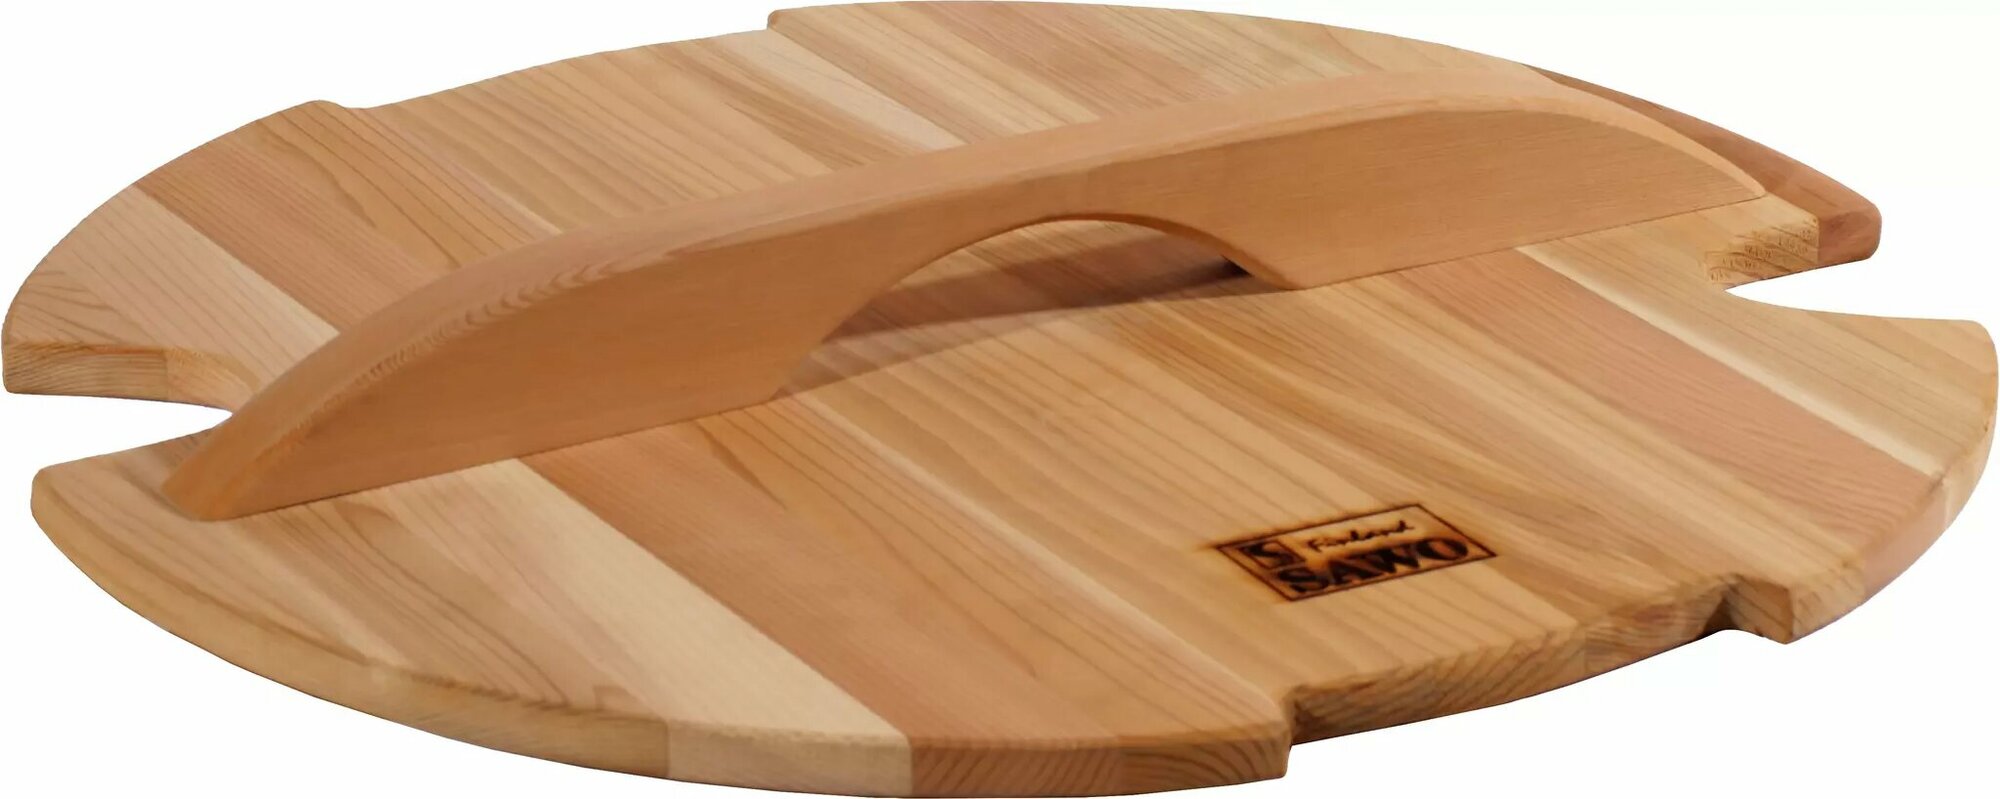 SAWO Крышка деревянная для запарника 392-D, 392-D-COV